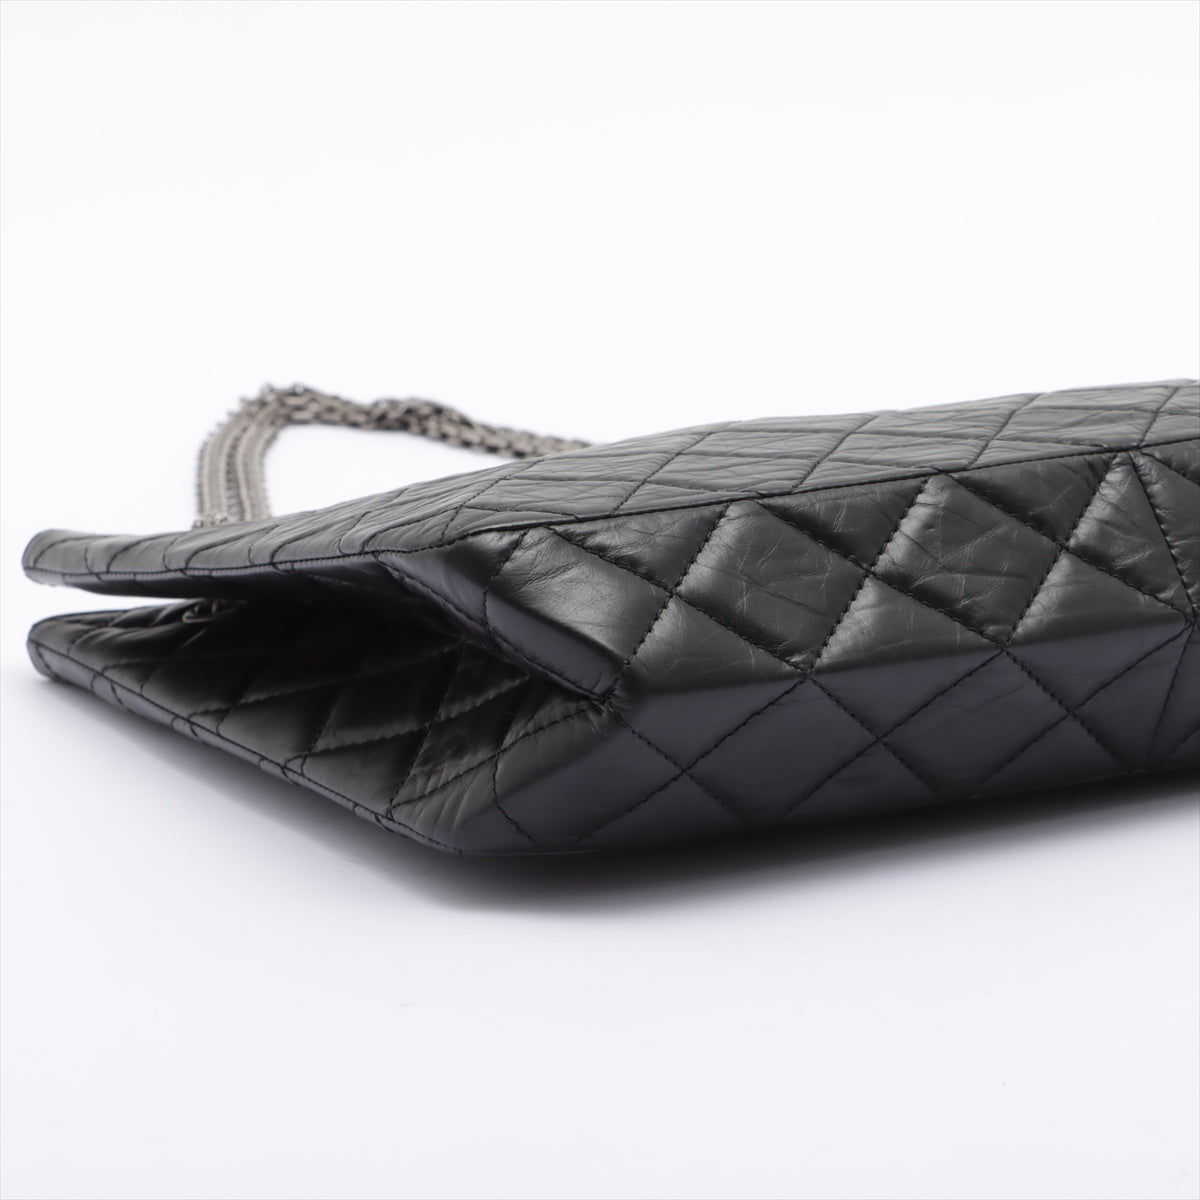 Chanel mini 2.55 Black Leather ref.238097